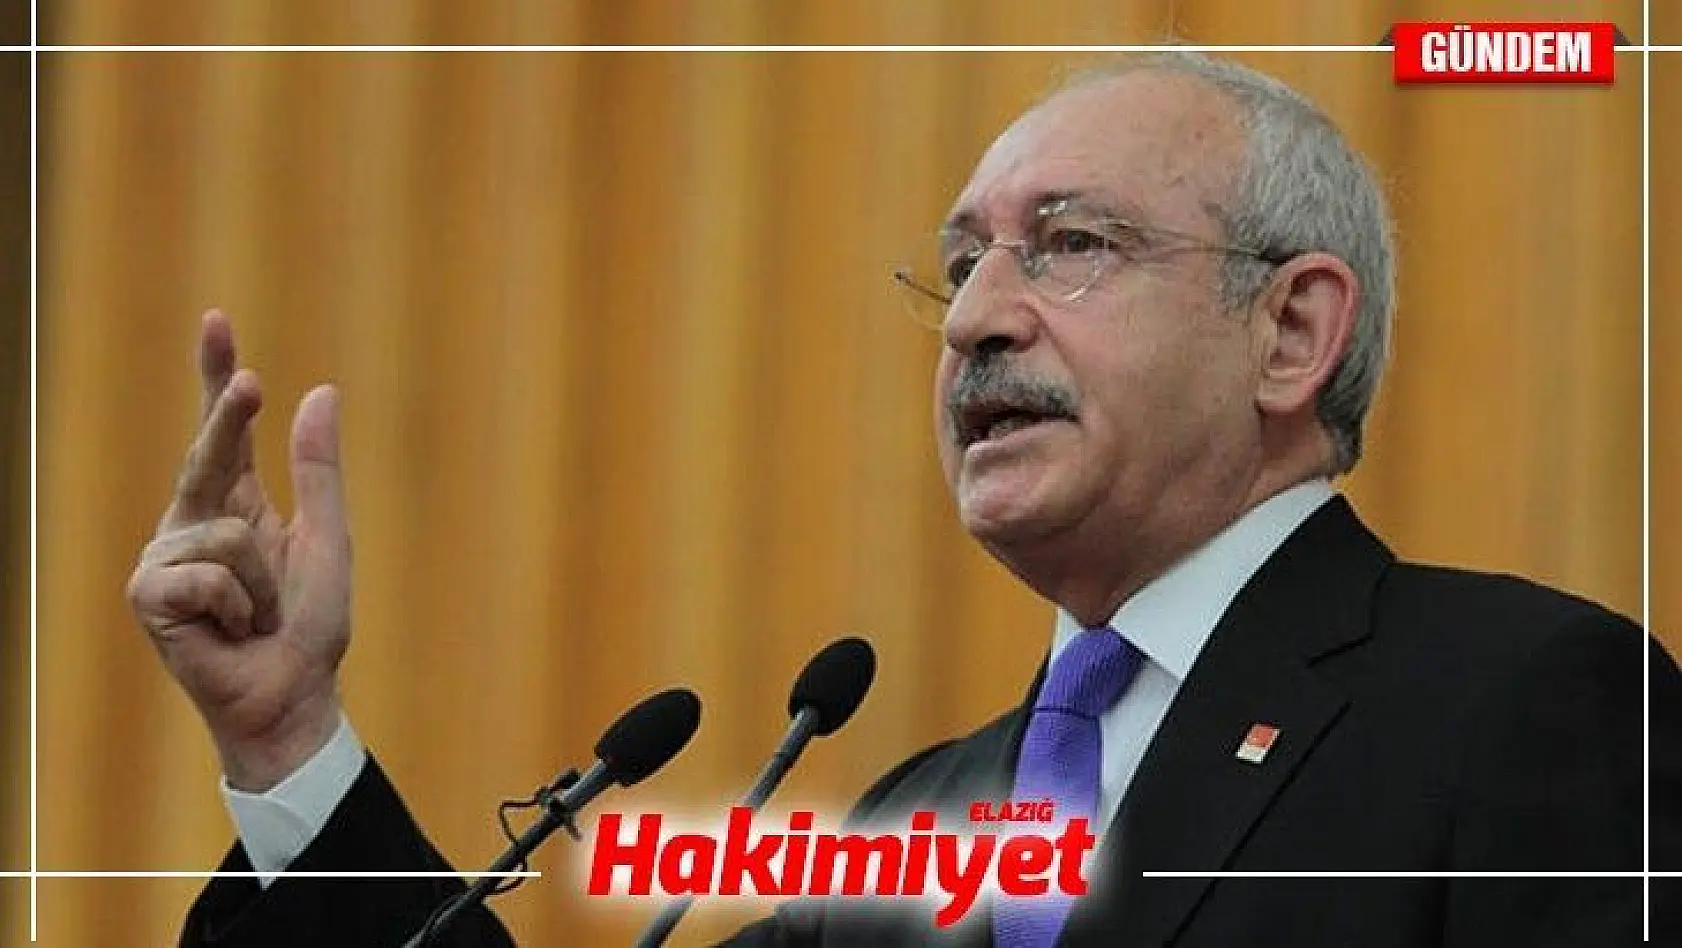 Muhtar merak edip sordu, Kılıçdaroğlu yanıtladı: Bakın Kılıçdaroğlu neden PKK'nın adını kullanmıyor